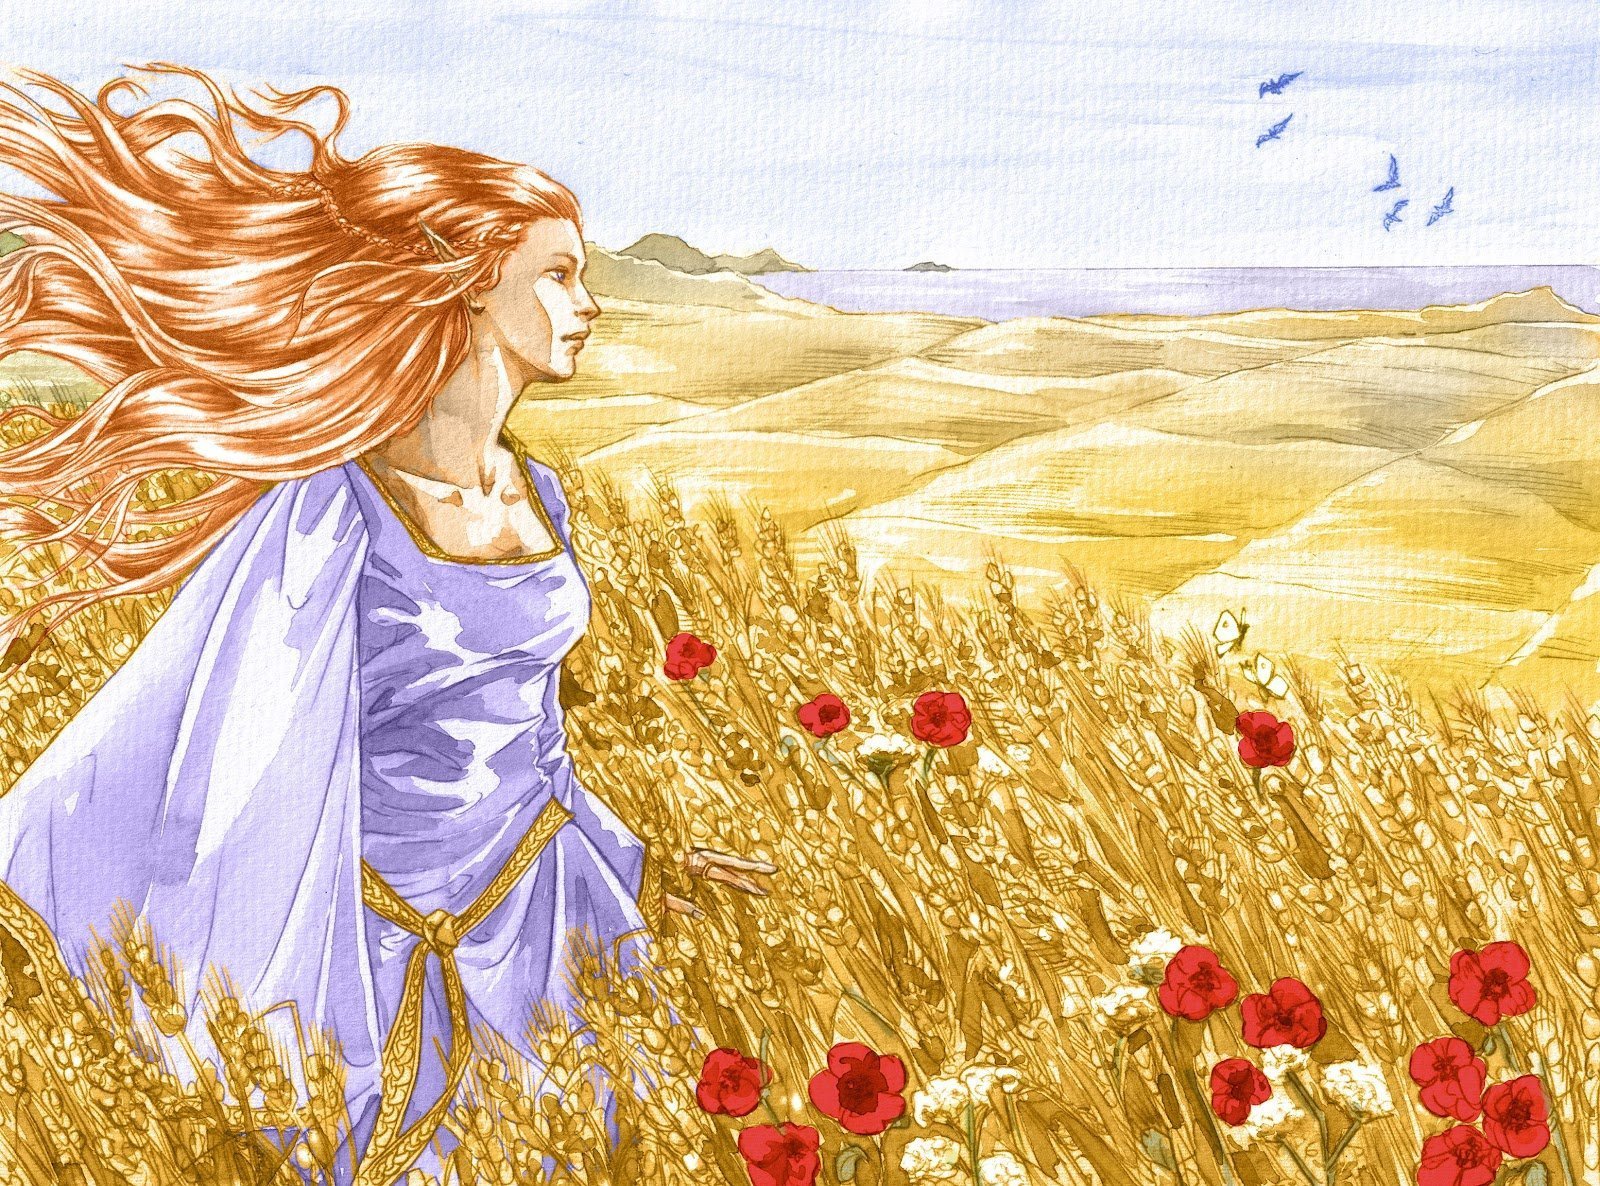 Душа словно ветер. ЛАММАС Лугнасад. Девушка с волосами цвета льна. Девушка в поле. Девица в поле с золотыми волосами.